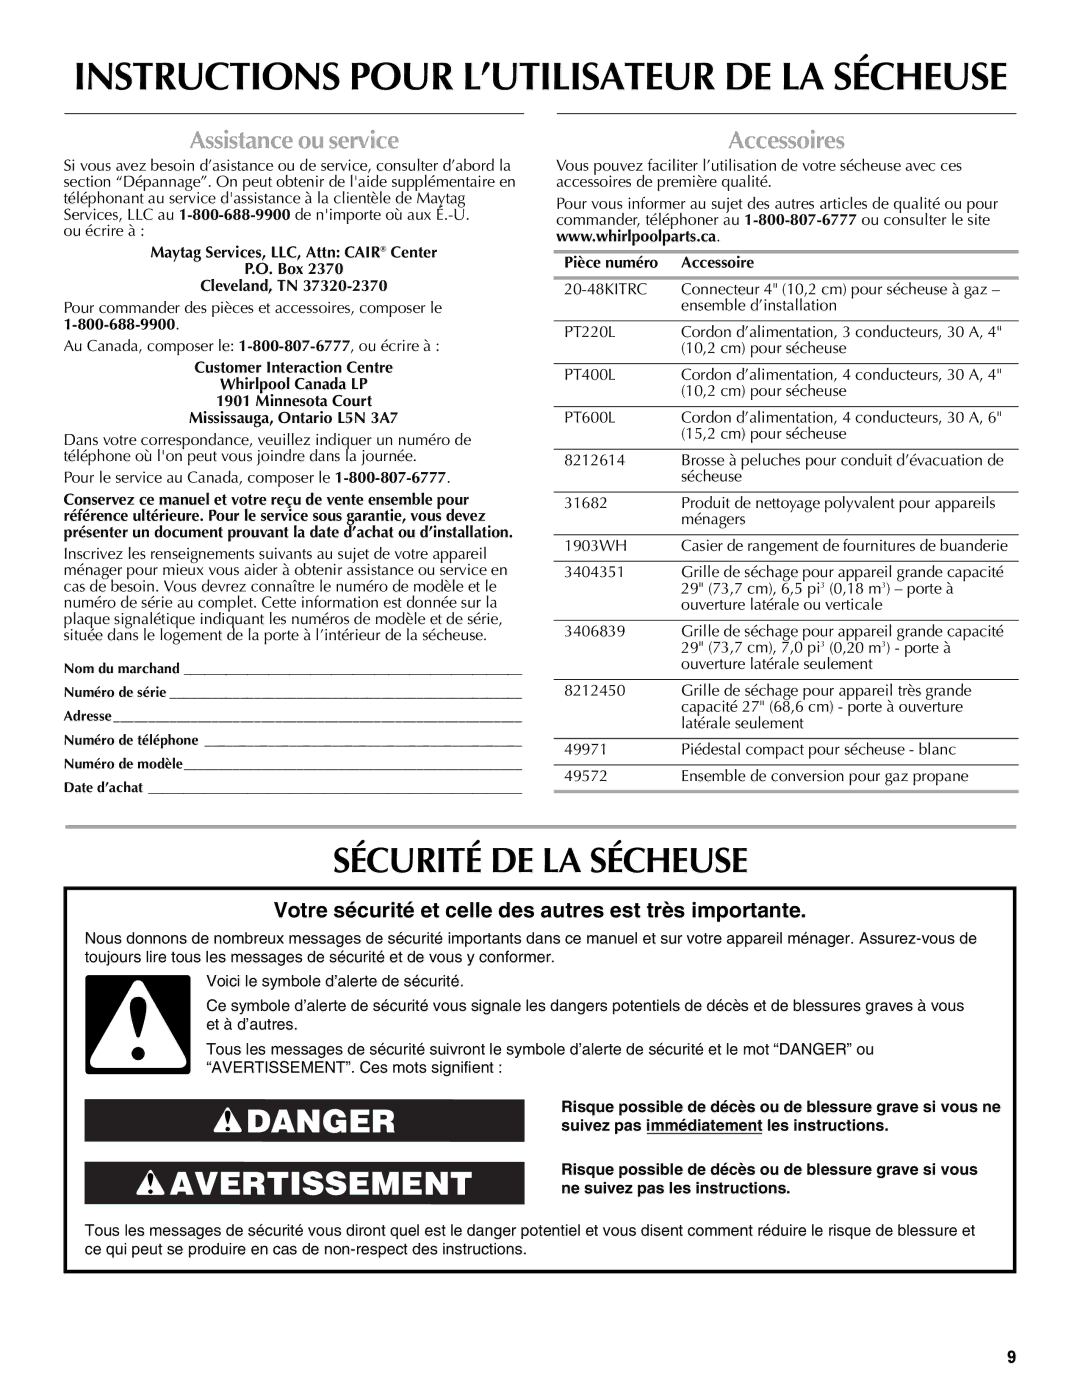 Maytag W10088780A warranty Sécurité DE LA Sécheuse, Assistance ou service, Accessoires, Pièce numéro Accessoire 